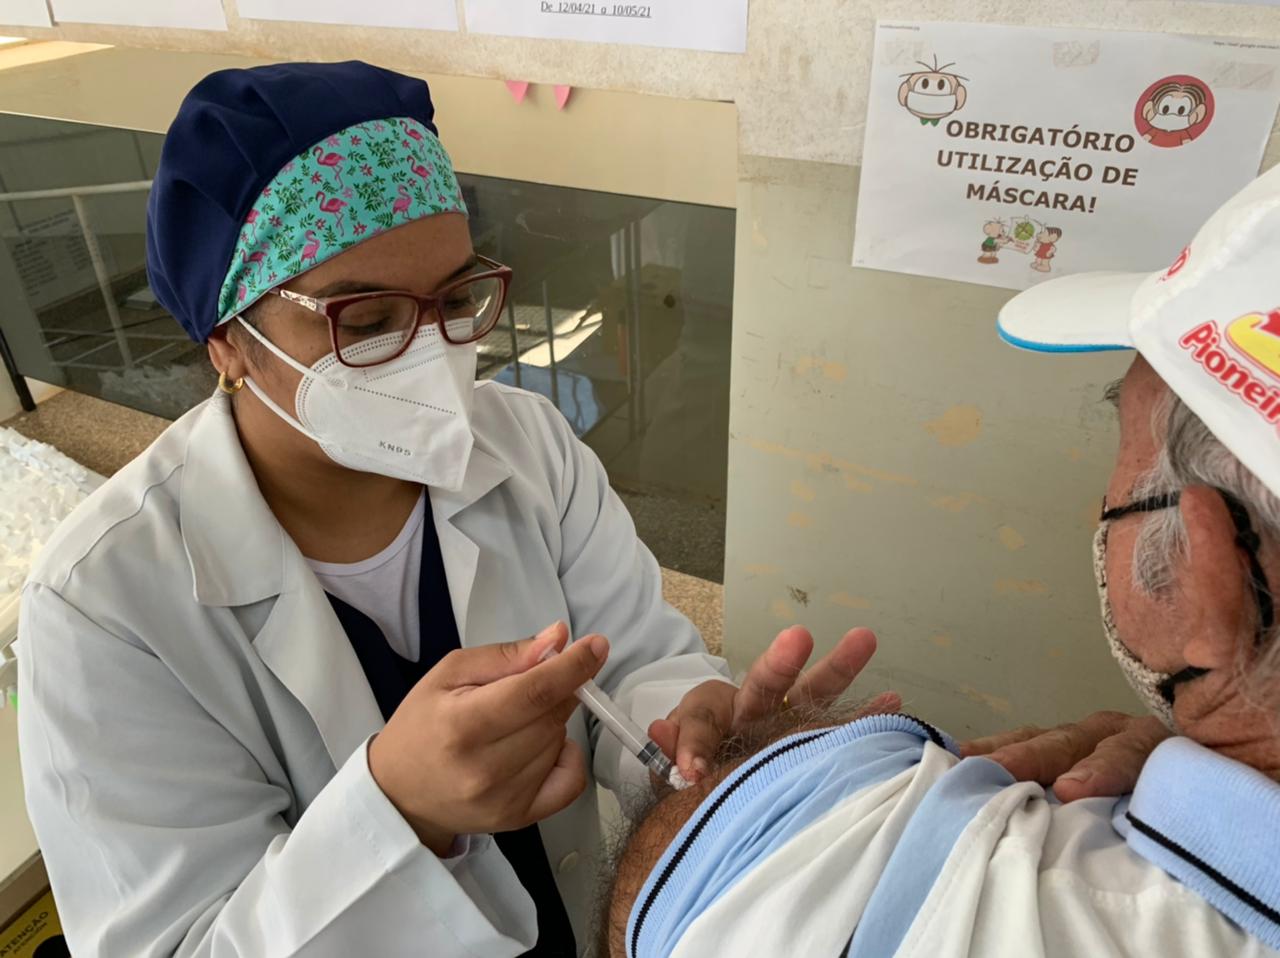 Calendário de vacinação: Idosos de 60 anos recebem a vacina contra a covid-19 nesta sexta (07) em Itararé (SP)